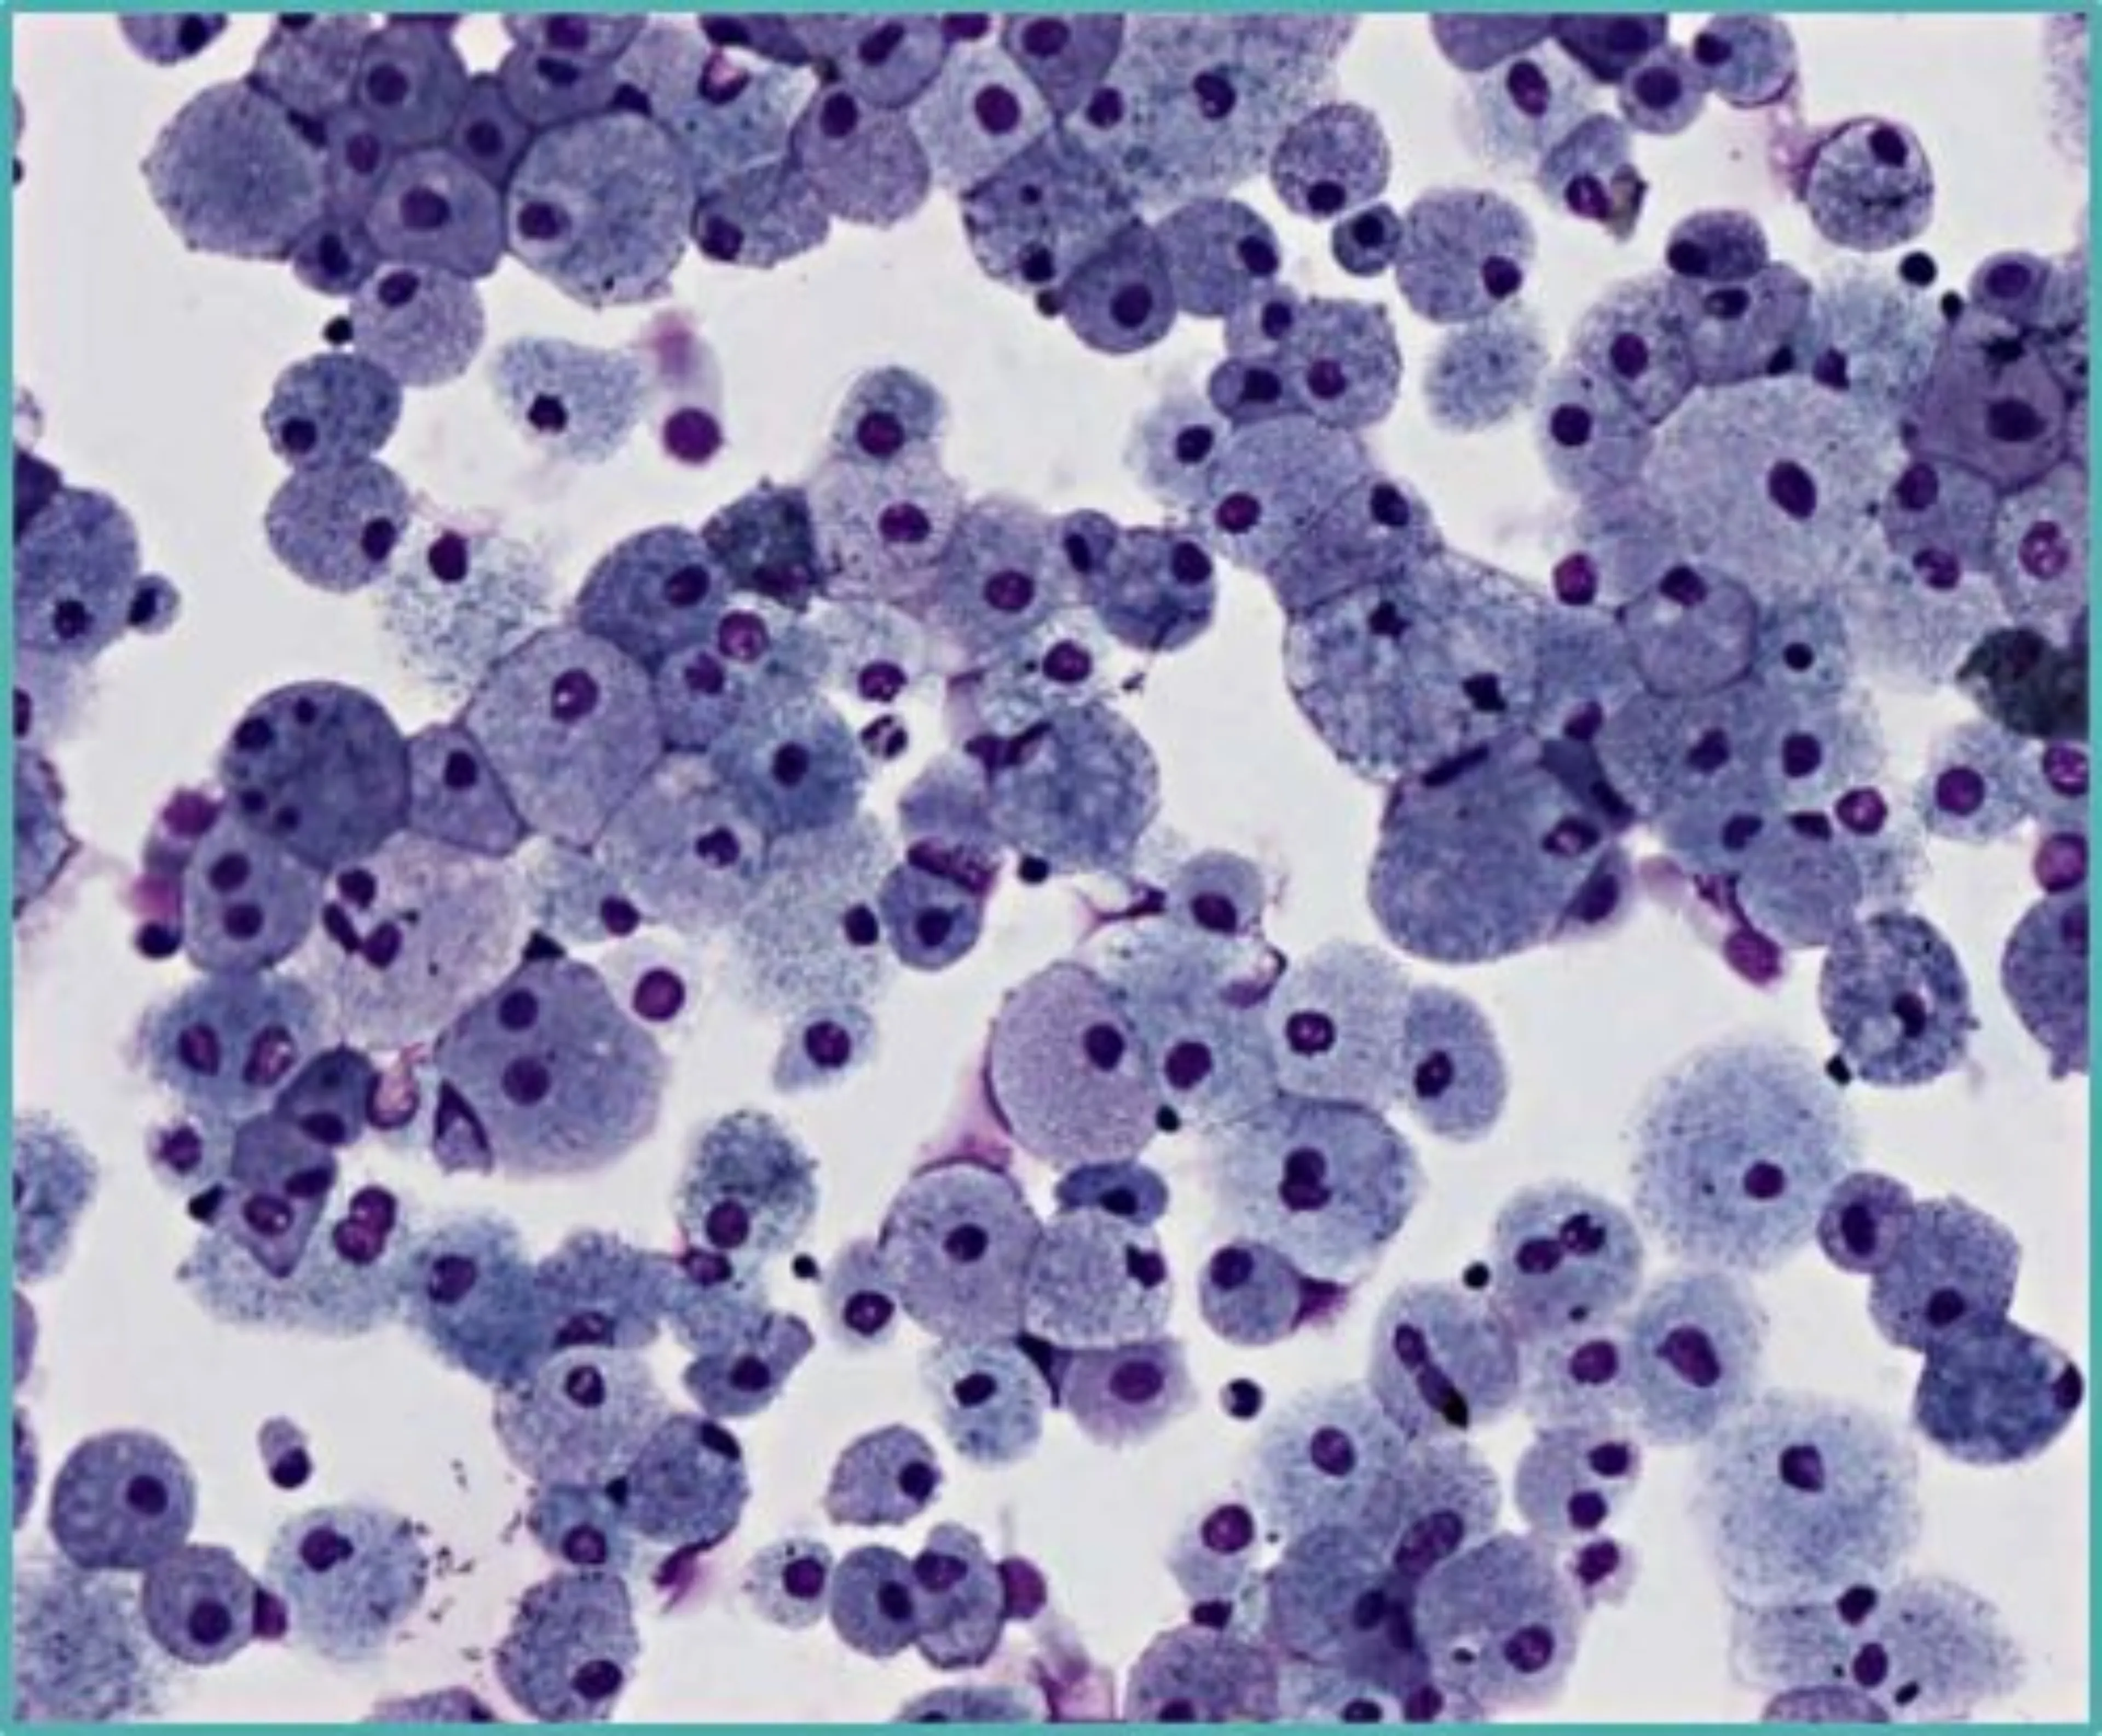 Macrophages spumeux : LBA d'une patiente ASMD de type B